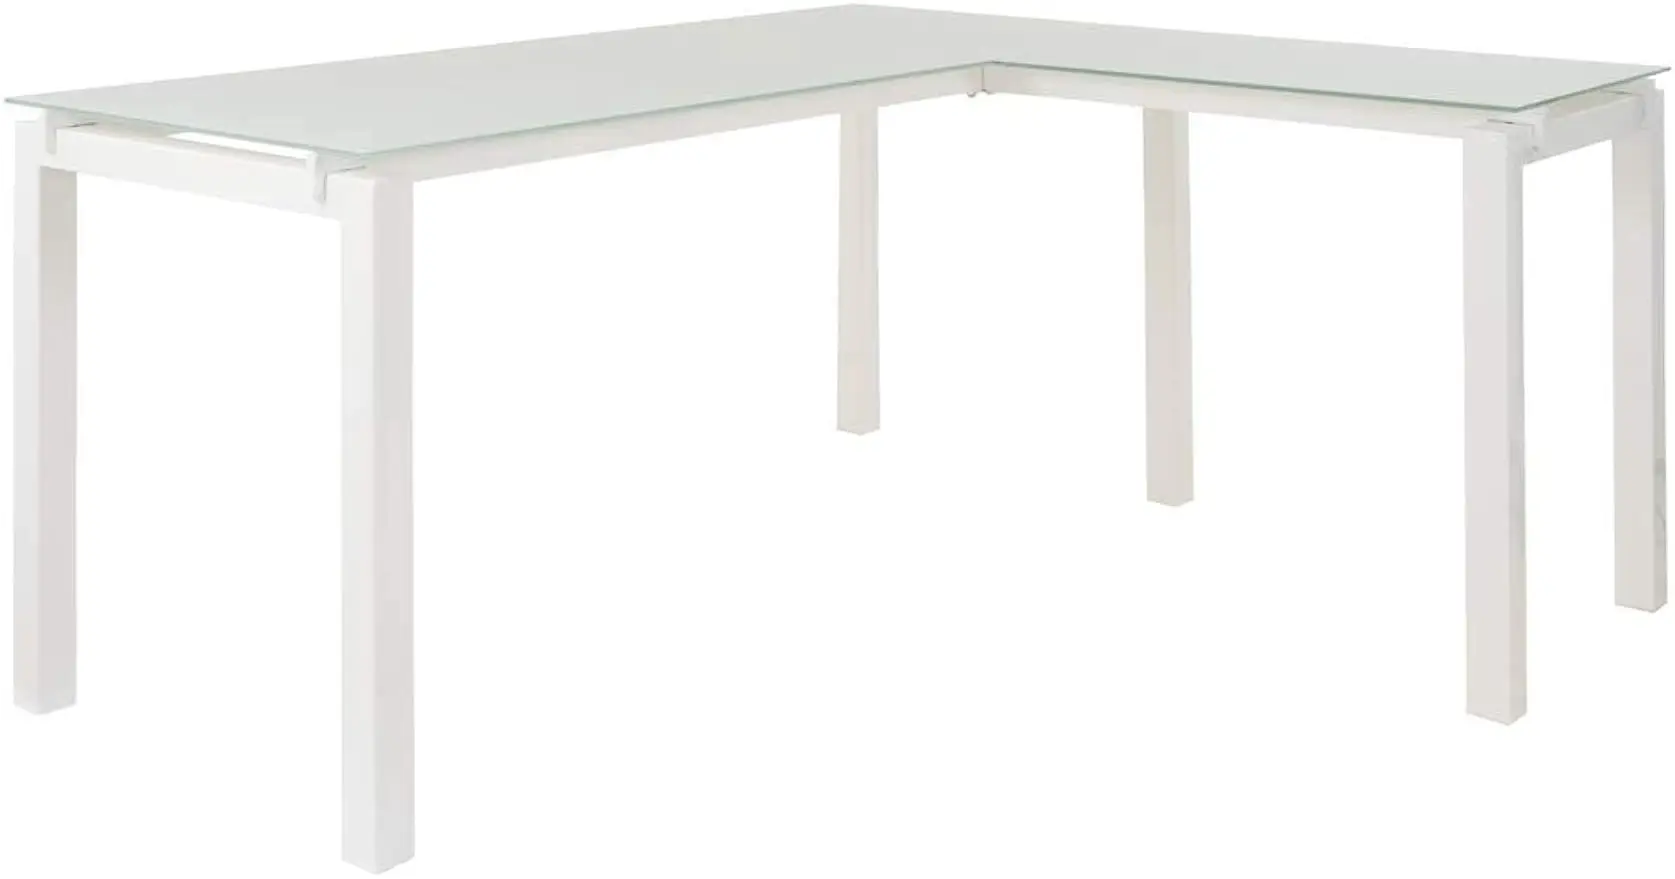 Ashley Baraga Contemporary Glass L-Shaped Desk, White Office  Signature Design